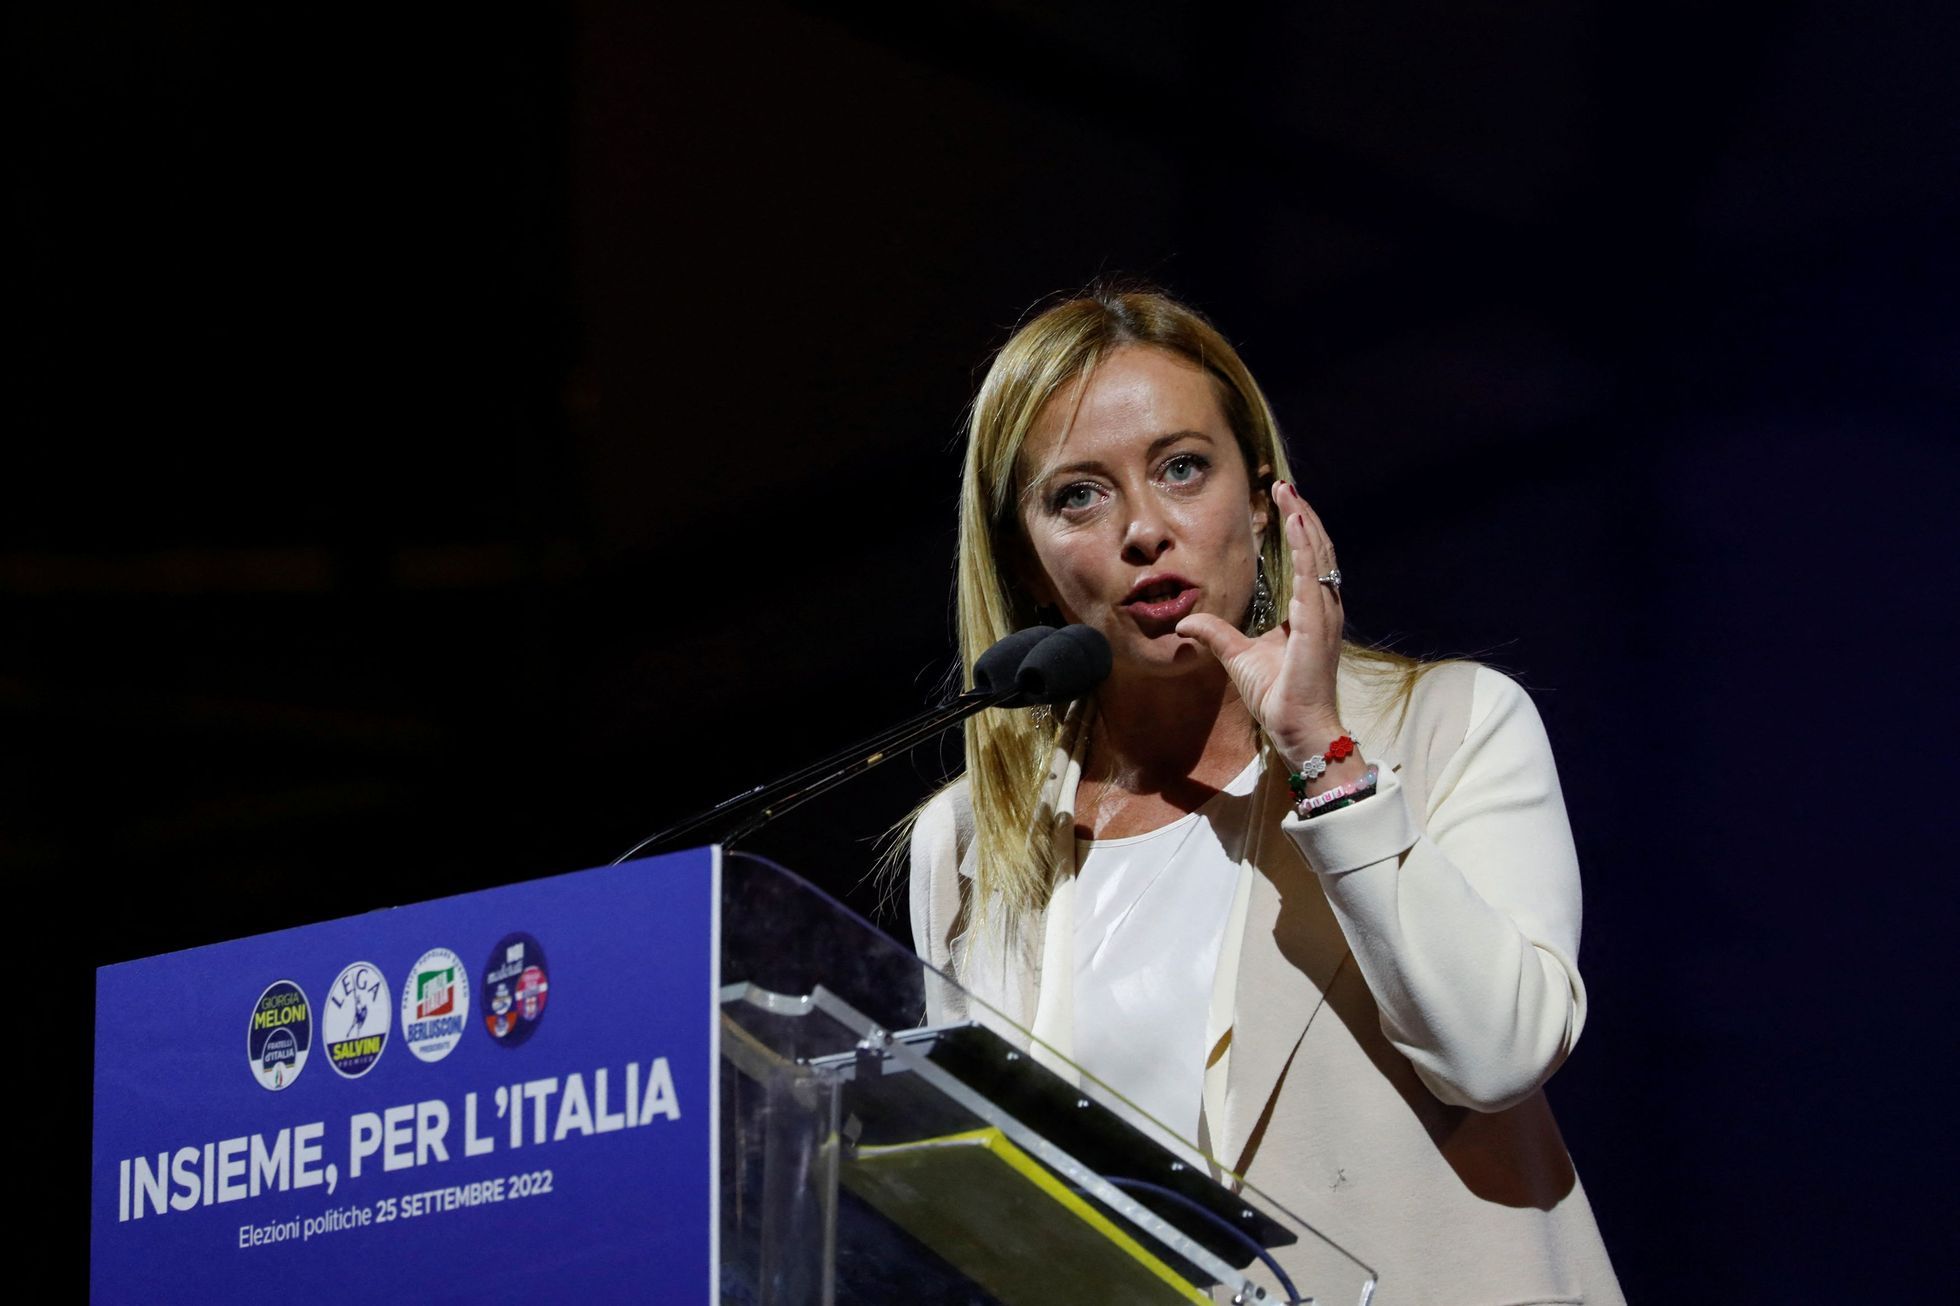 Governeremo come i nostri amici della Repubblica Ceca, riferisce la vincitrice delle elezioni italiane Meloniová